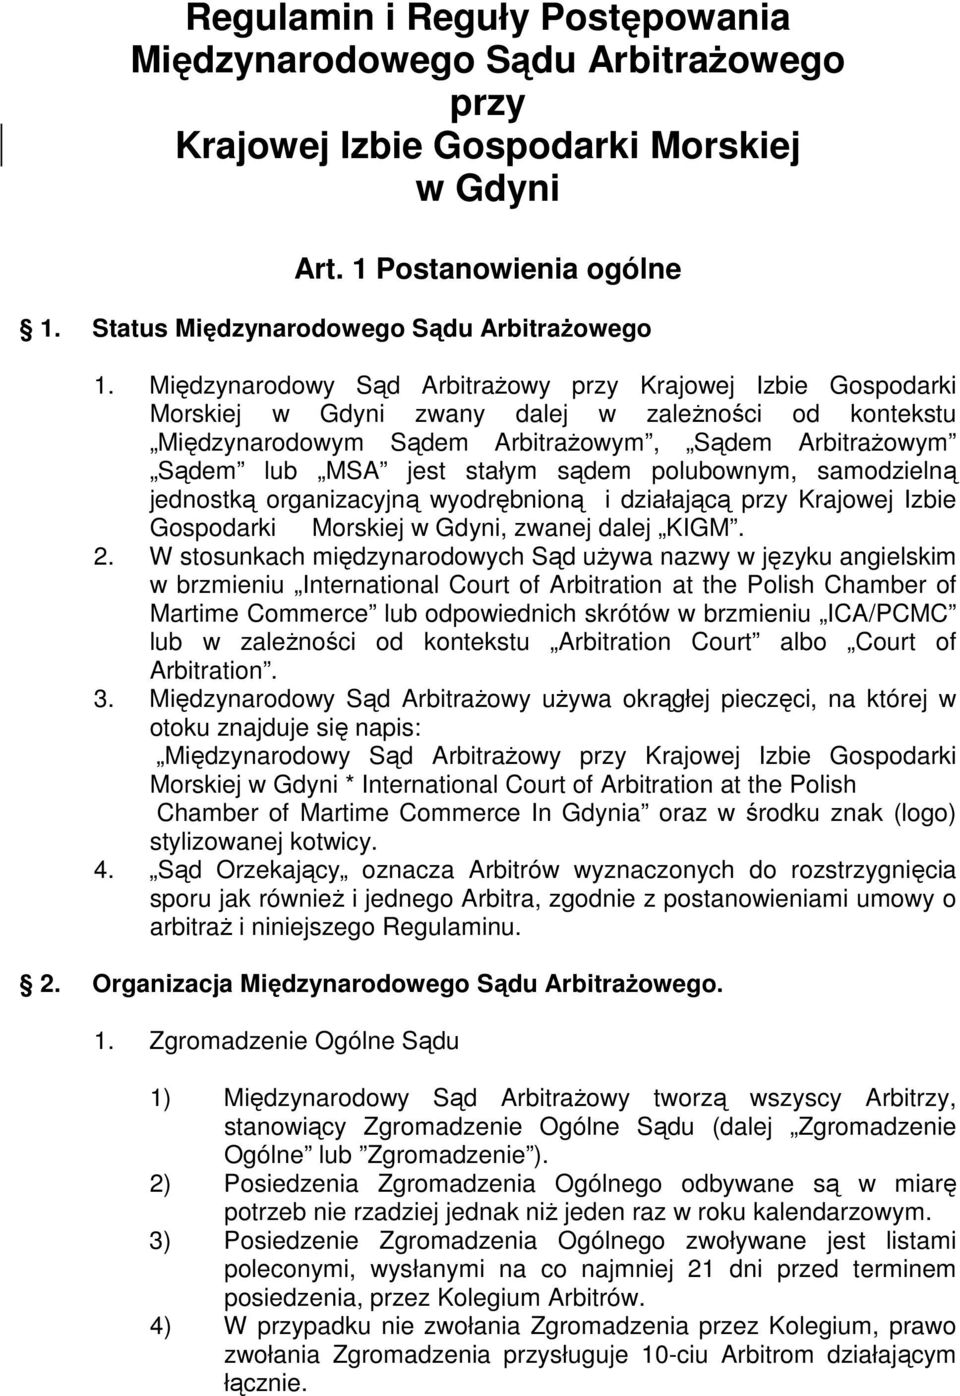 sądem polubownym, samodzielną jednostką organizacyjną wyodrębnioną i działającą przy Krajowej Izbie Gospodarki Morskiej w Gdyni, zwanej dalej KIGM. 2.